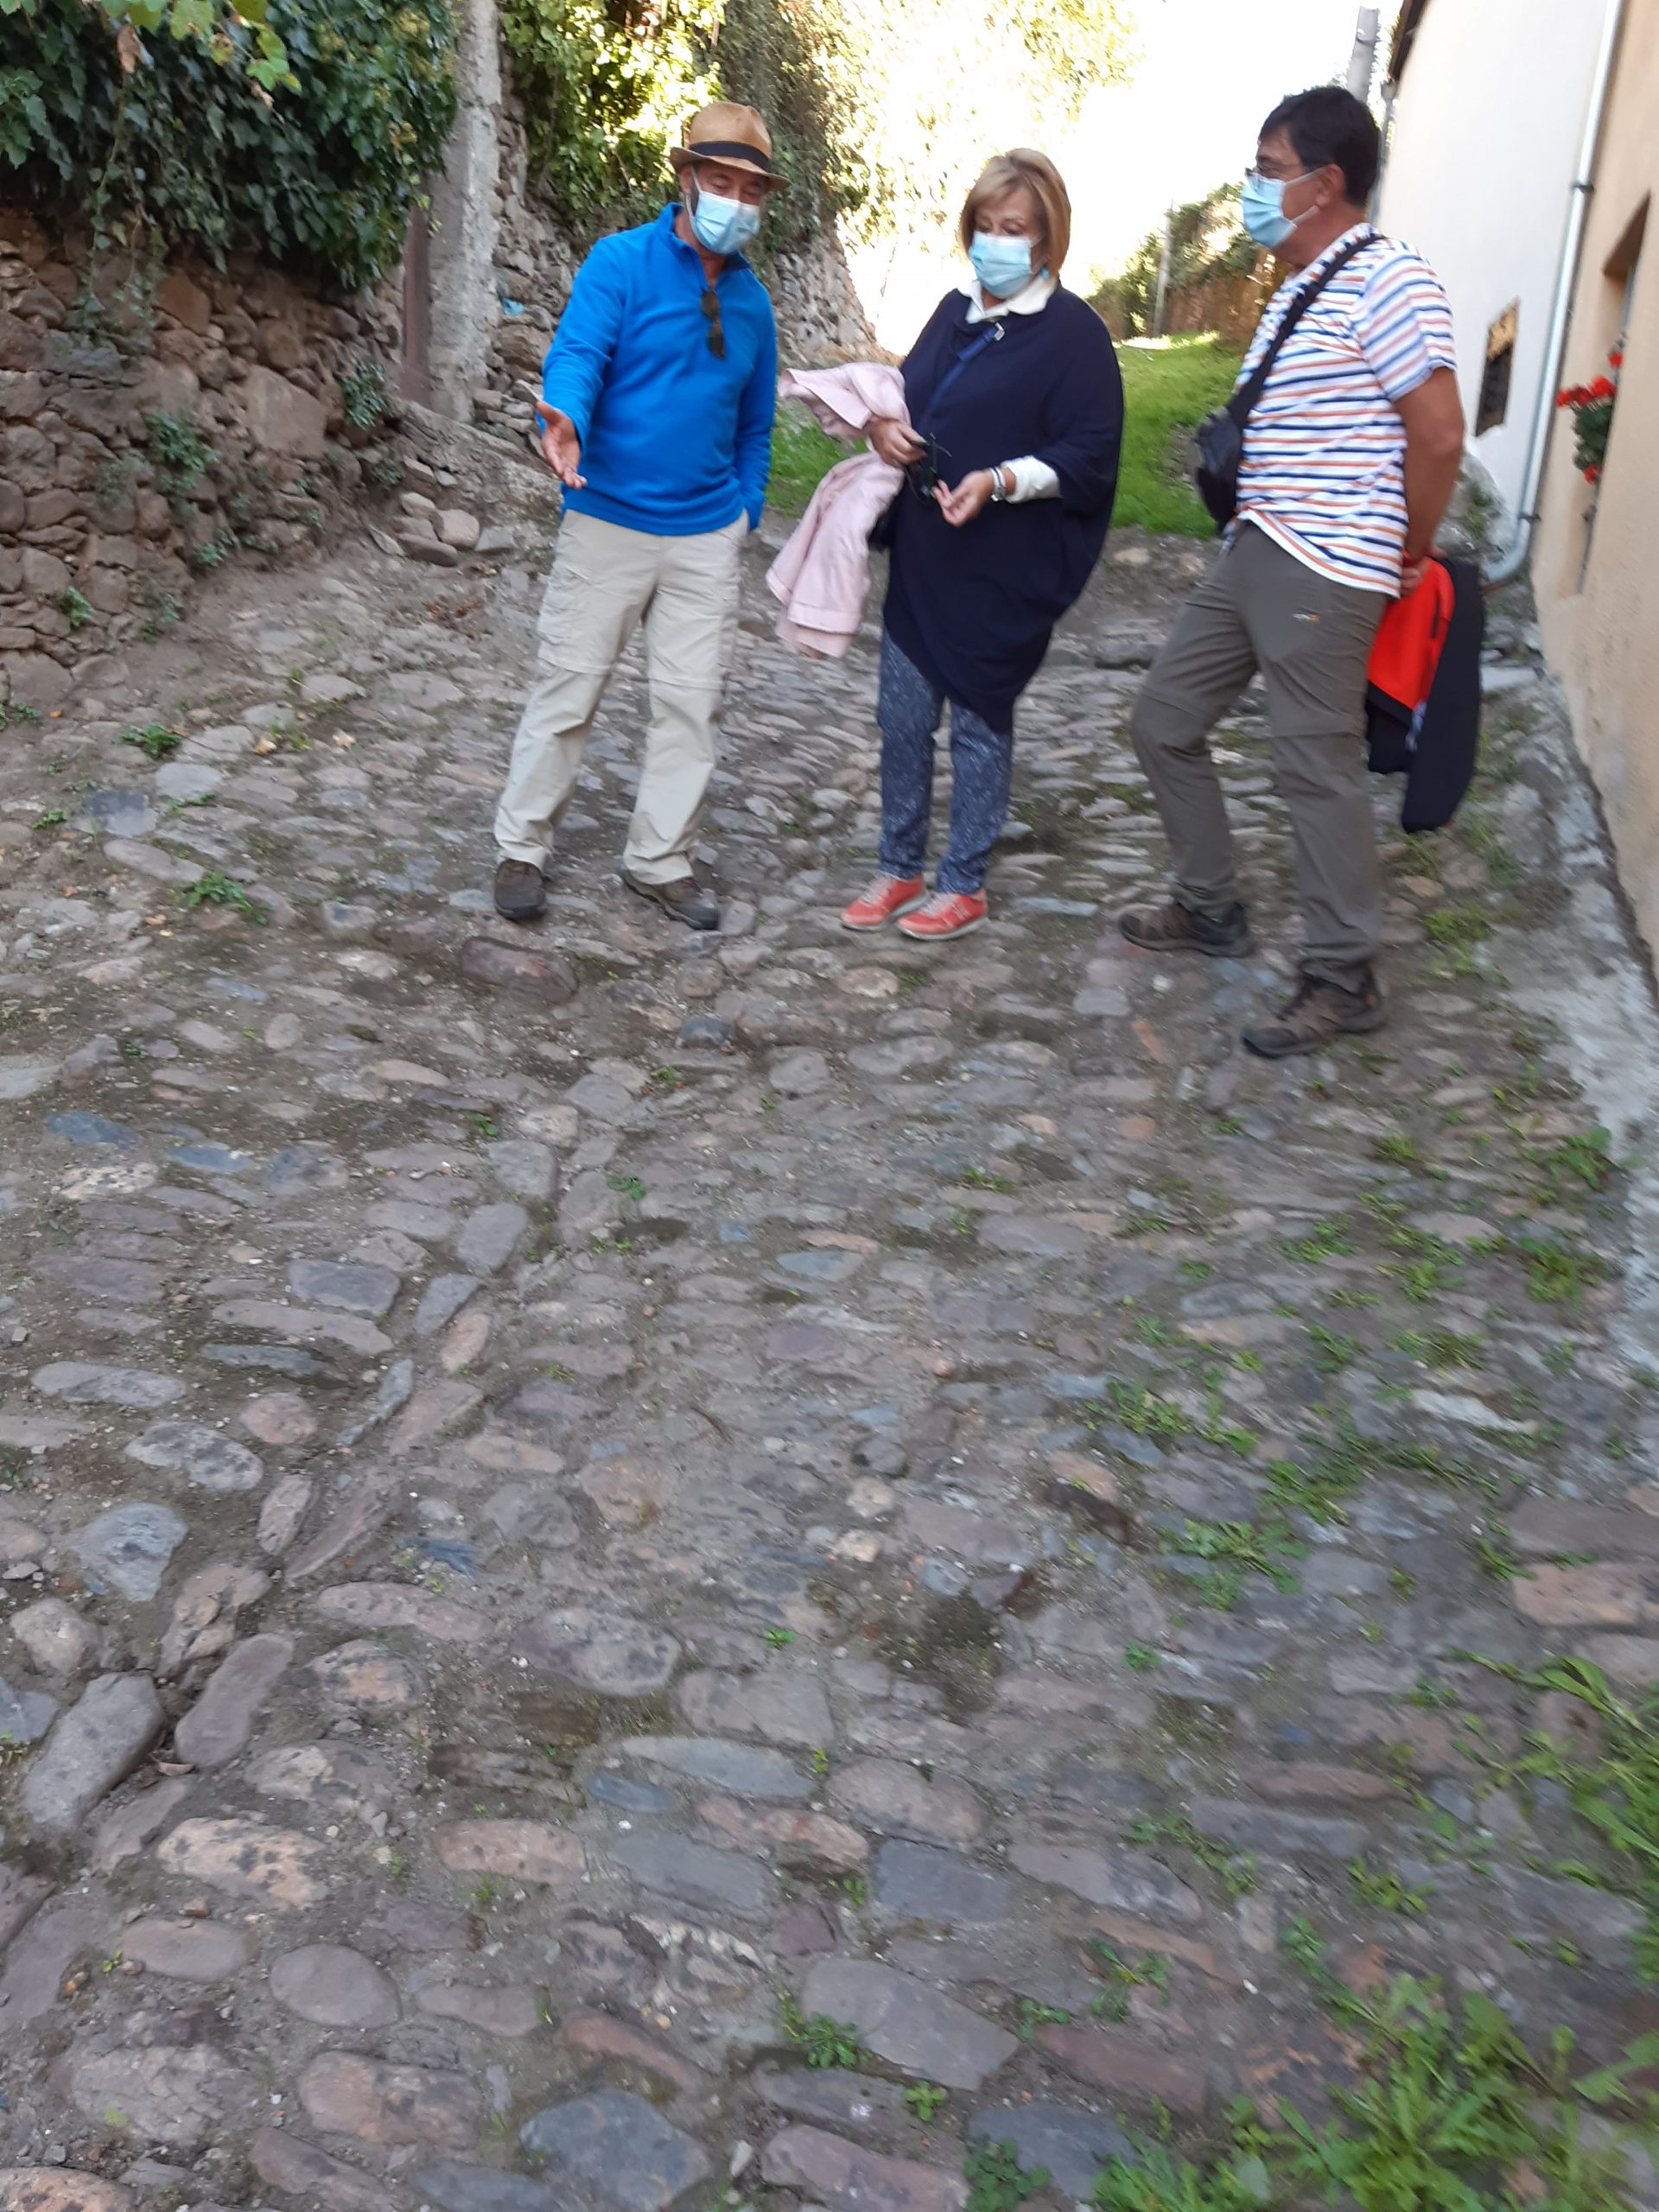 Descubriendo una calzada medieval que conduce al conjunto monumental de S. Vicente en Monforte de Lemos